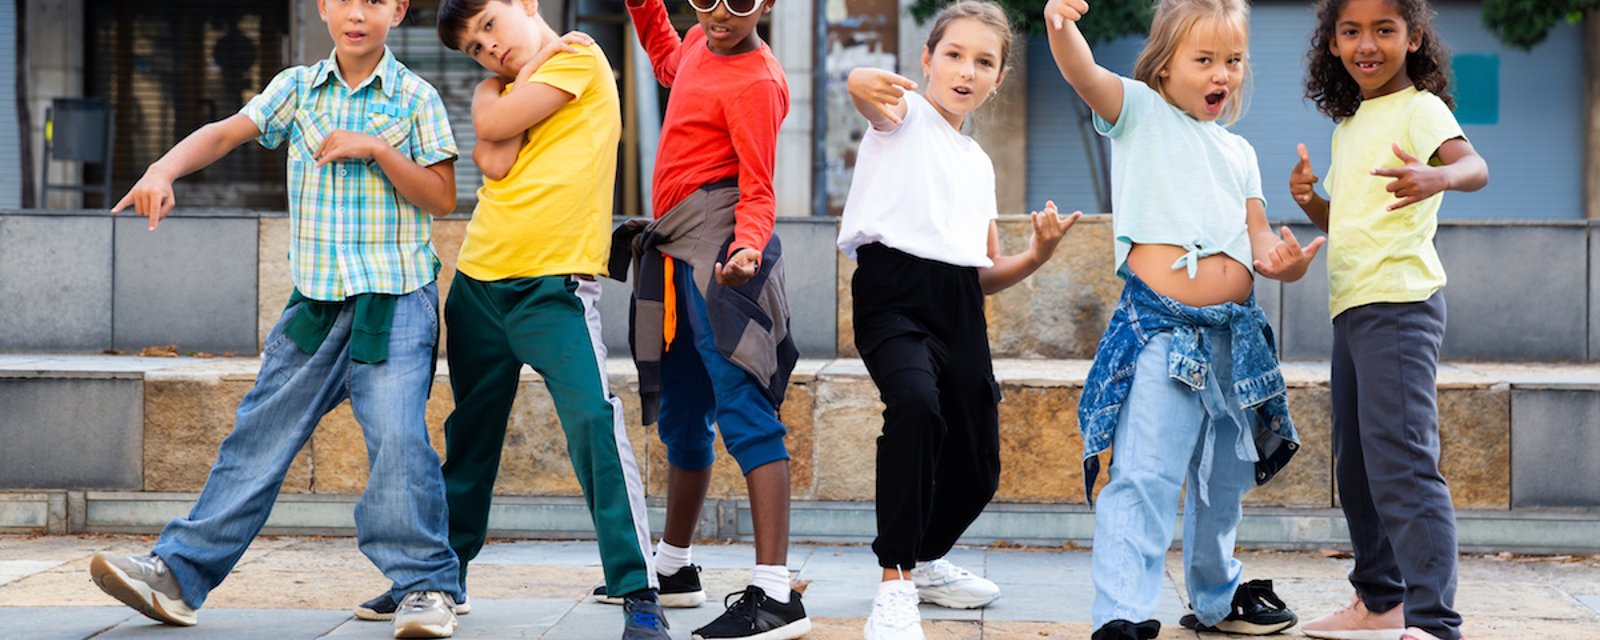 La danse de rue dès la maternelle contribue à développer les fonctions exécutives des enfants